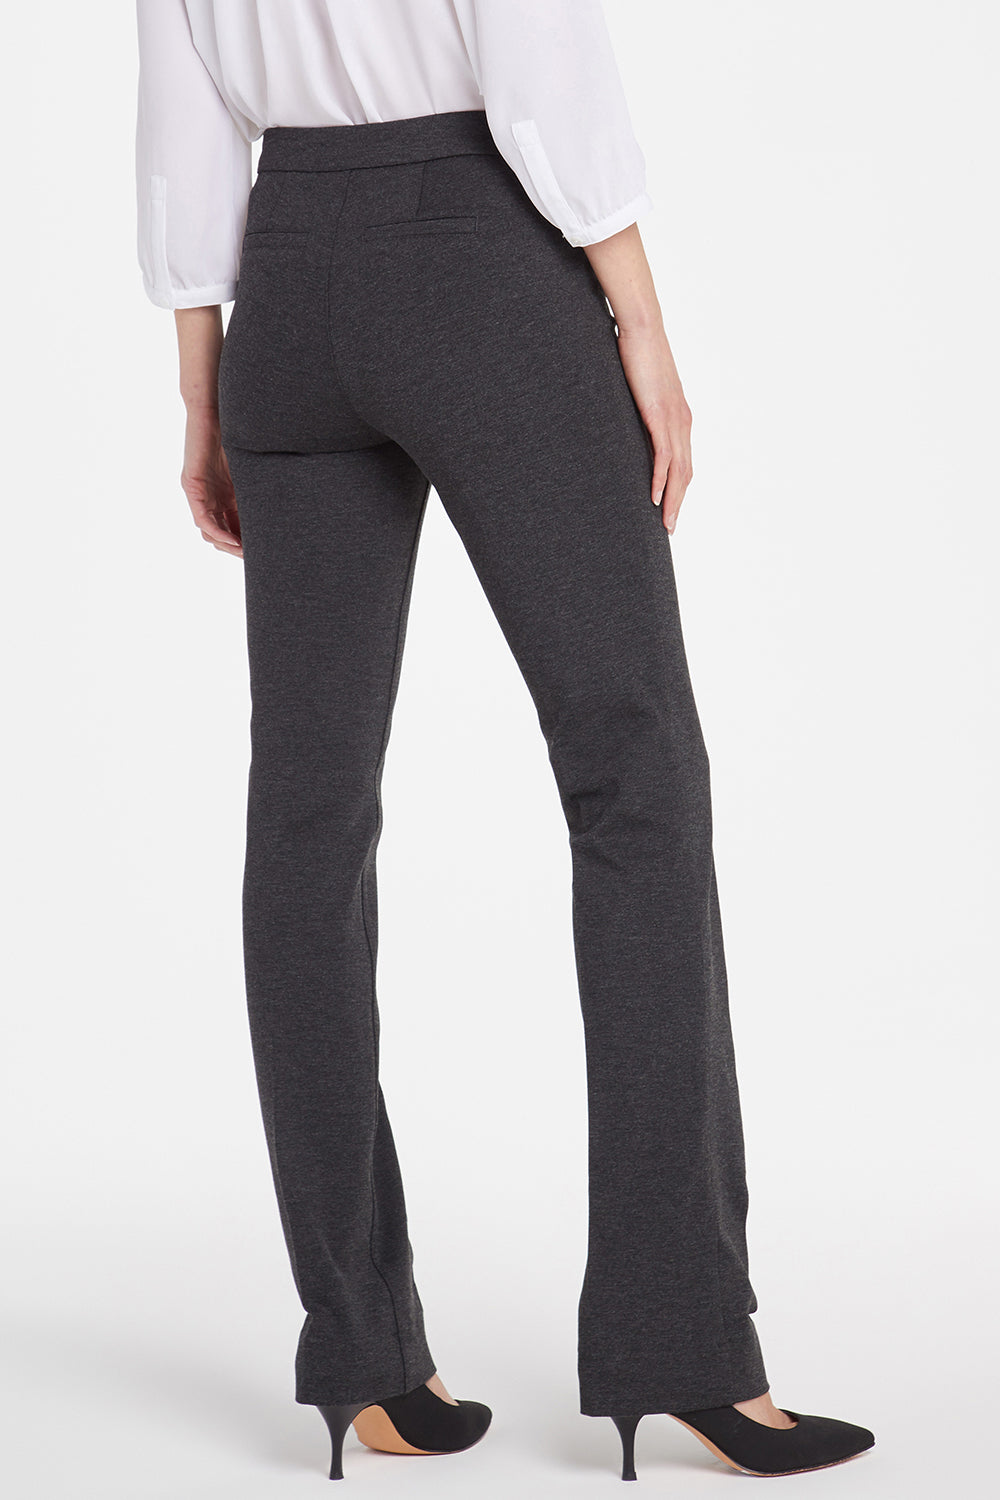 Slim Trouser Pants In Curves 360 Ponte Knit - Black | NYDJ